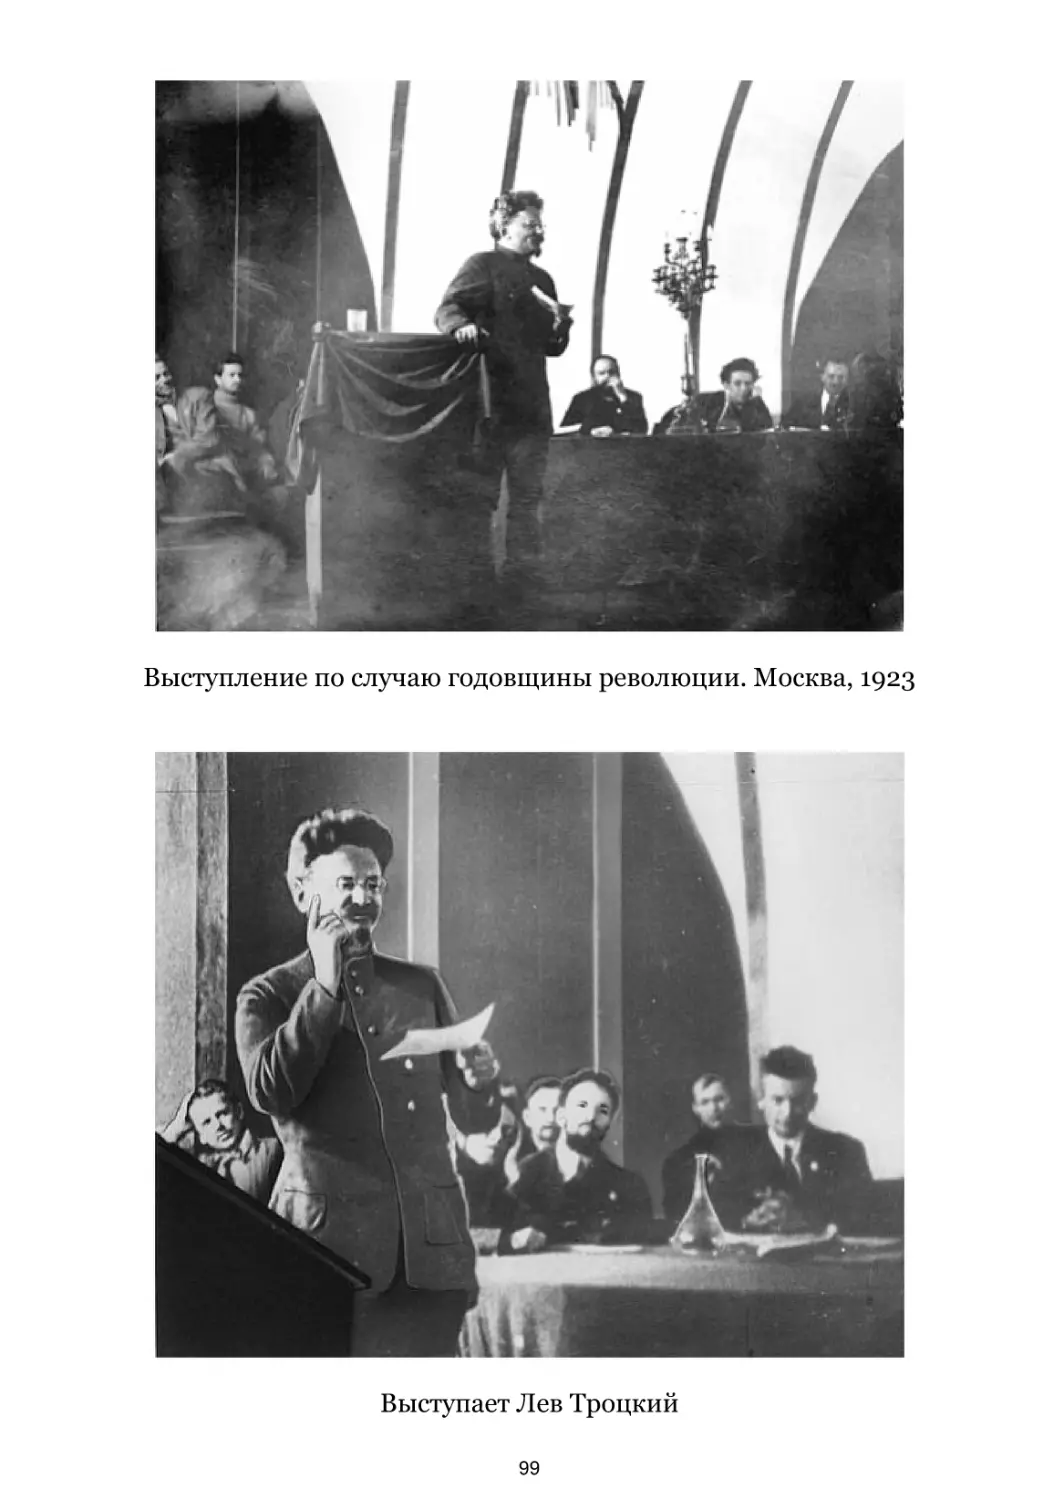 Выступление по случаю годовщины революции. Москва, 1923
Выступает Лев Троцкий